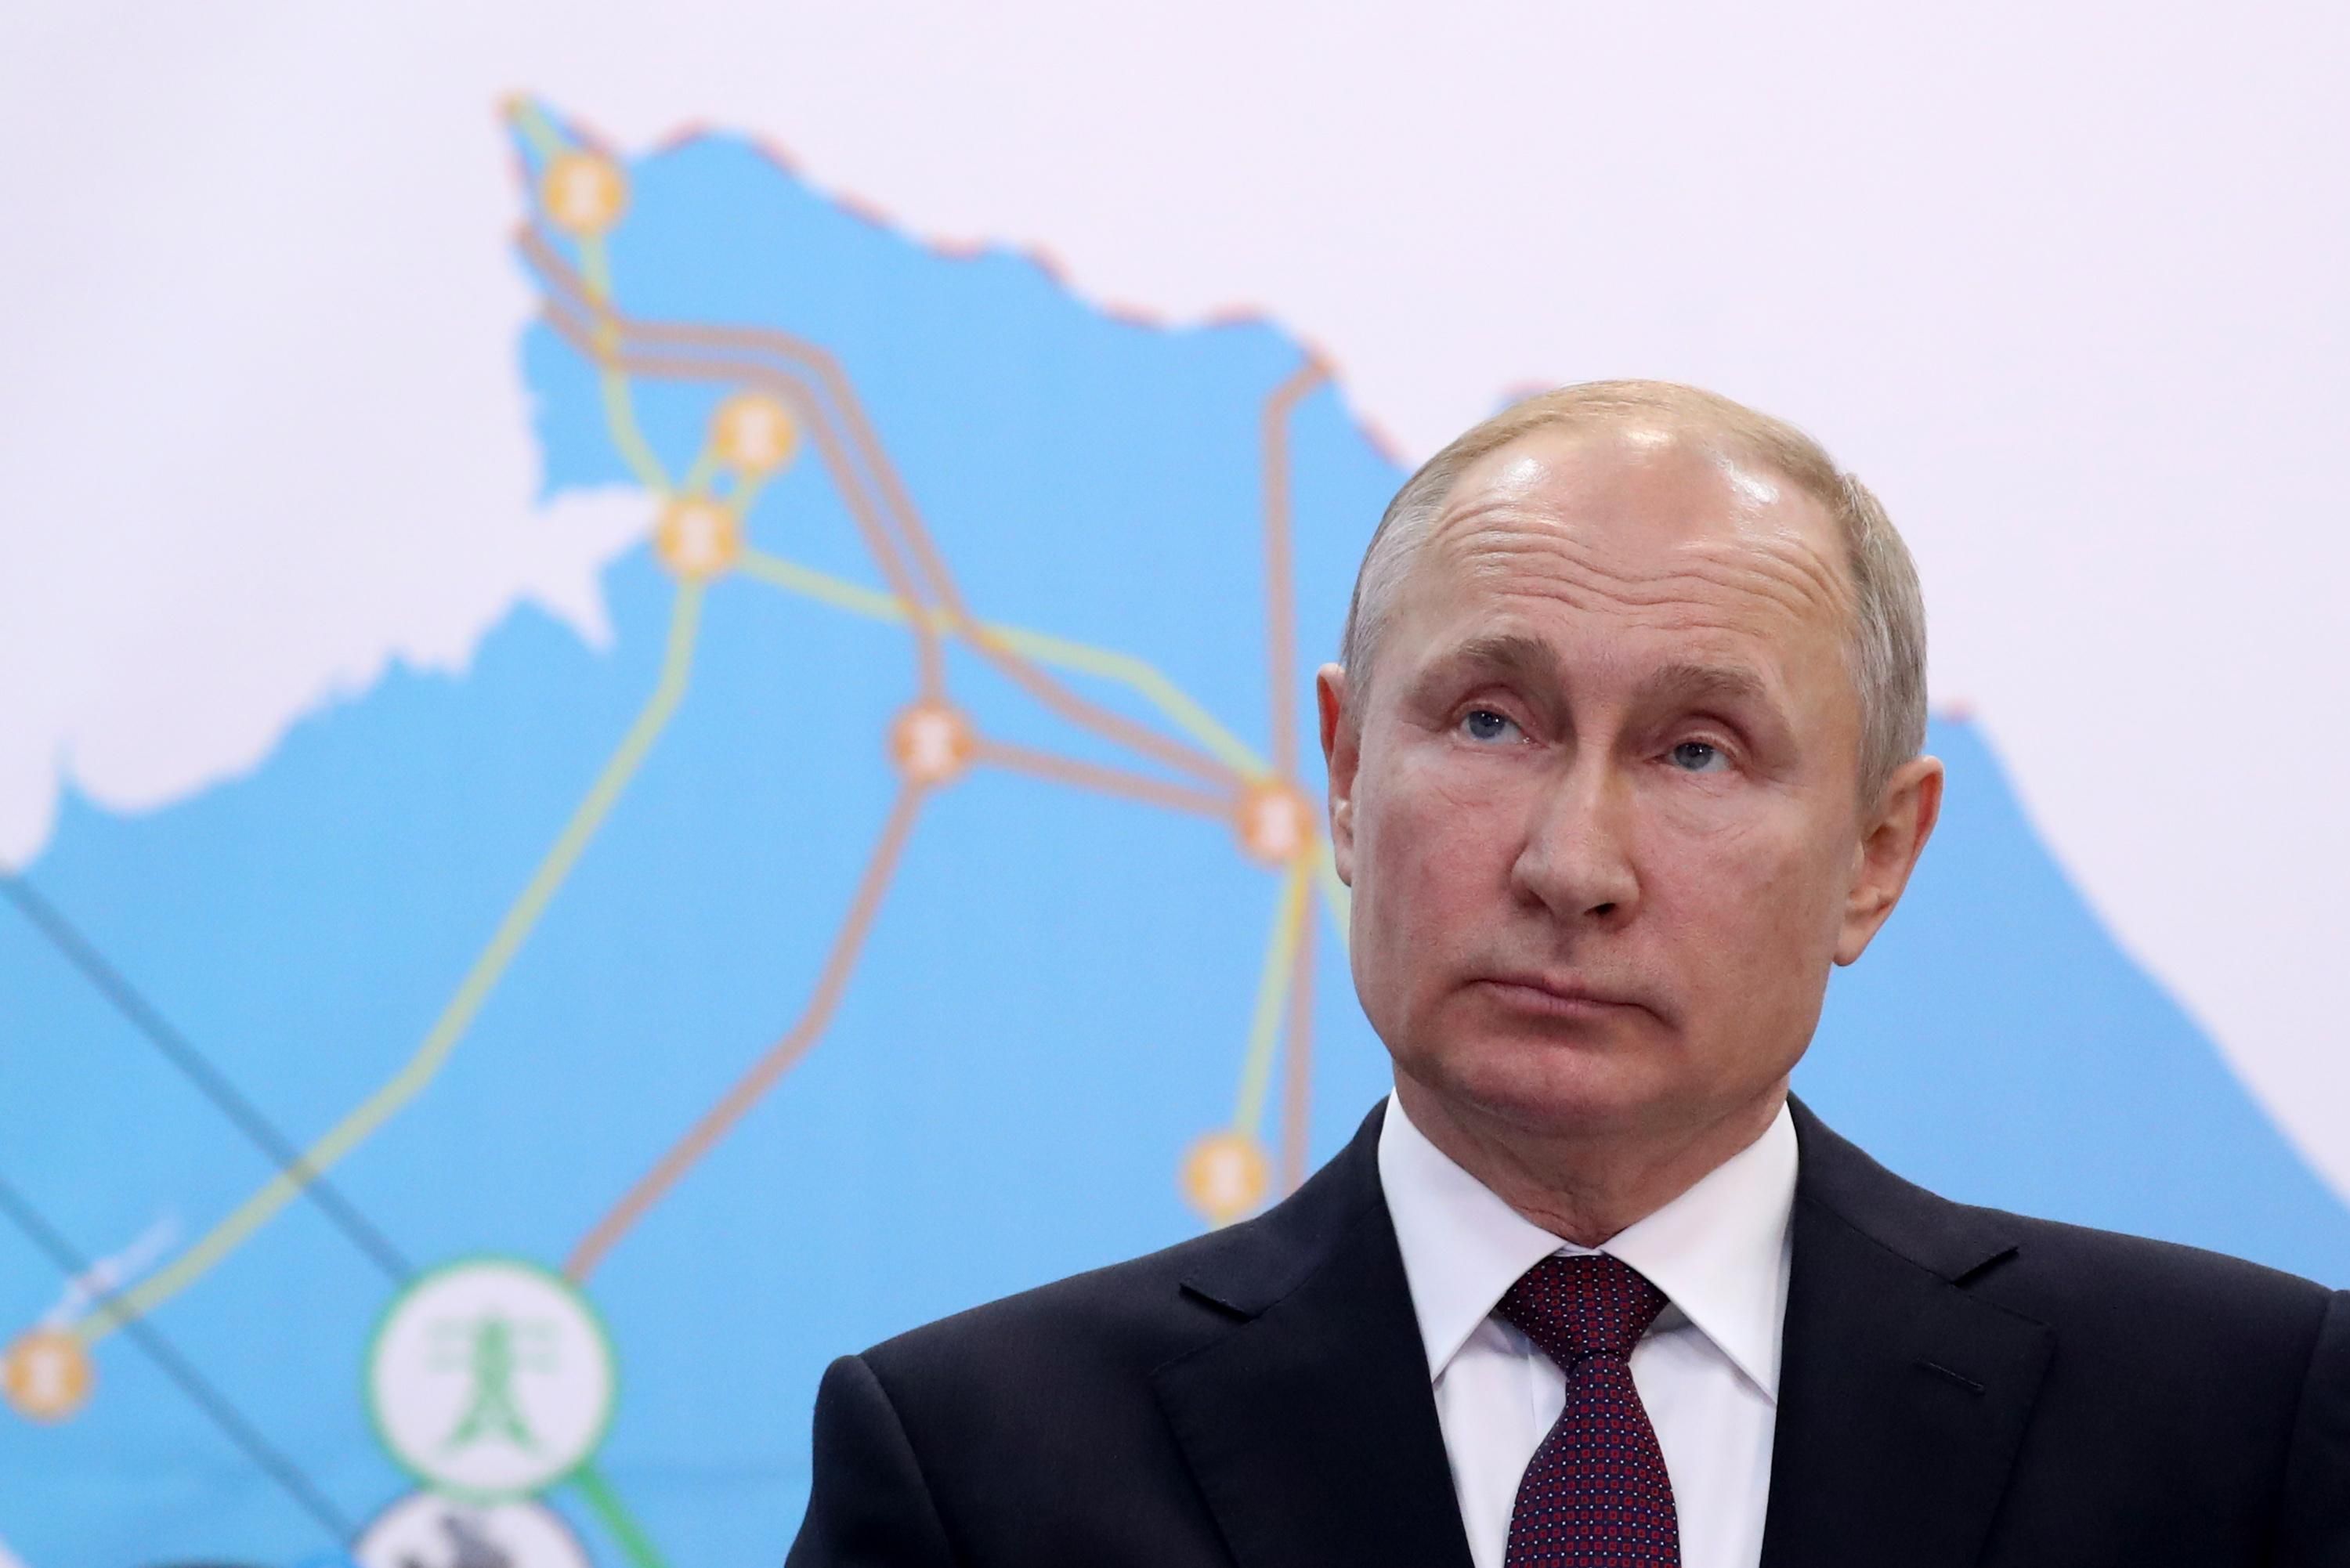 "ГТС може луснути": Росія не збирається збільшувати постачання газу через Україну - Новини Росії і України - 24 Канал